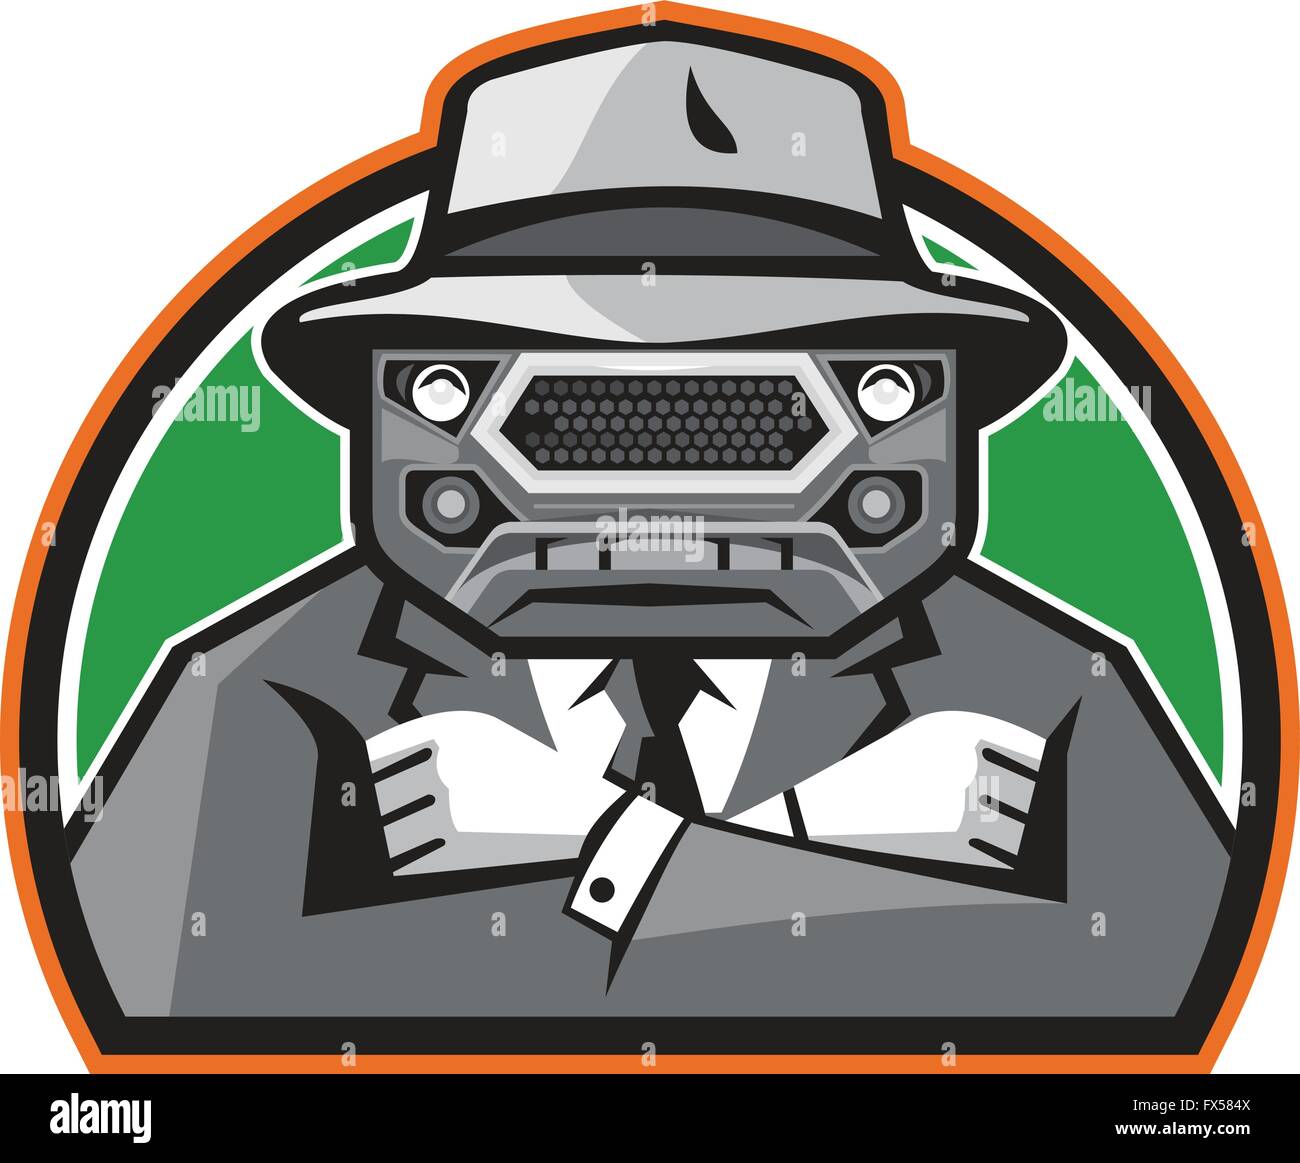 Illustration d'un gangster en colère avec auvent voiture grill face wearing hat , cravate et costume bras croisés face à l'avant fixé à l'intérieur de la moitié Illustration de Vecteur